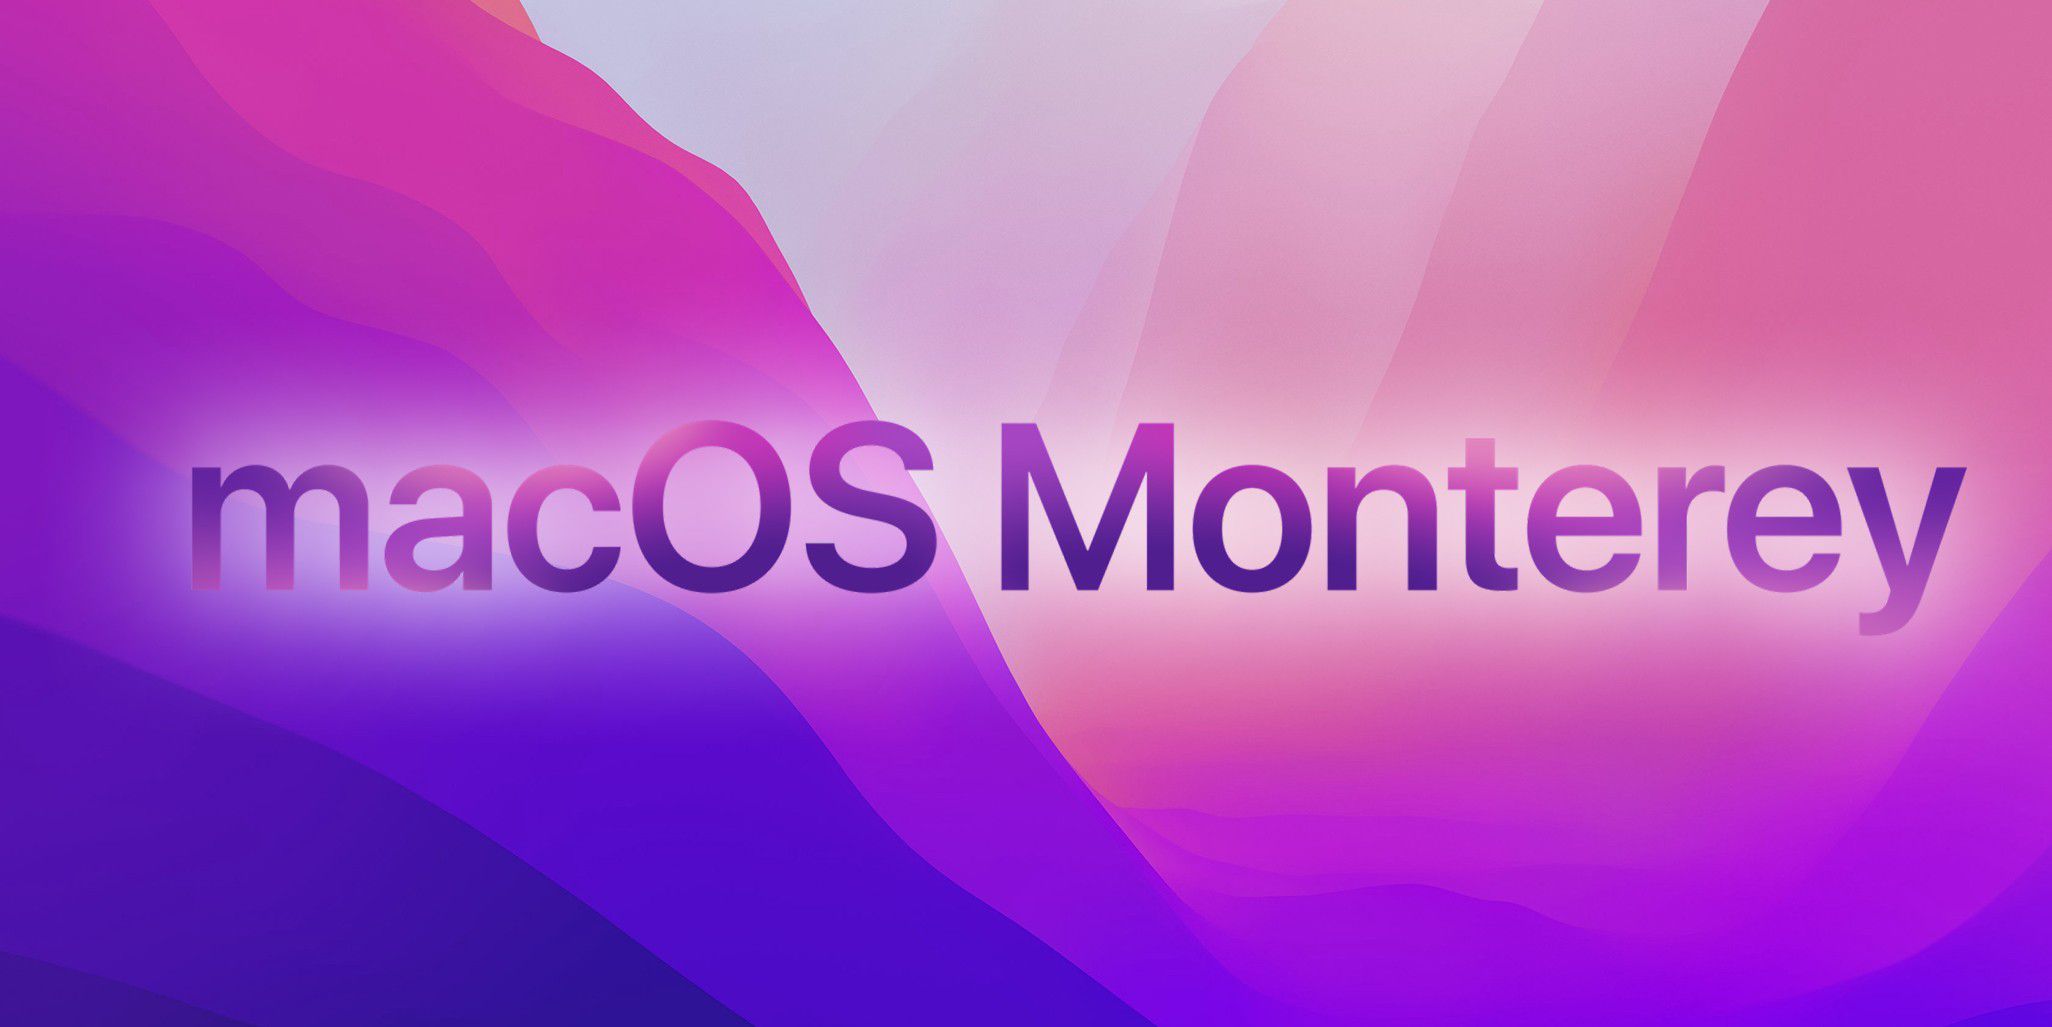 Apple ra mắt bộ hình nên lấy cảm hứng trên macOS Monterey, dùng được cho cả  2 hệ điều hành